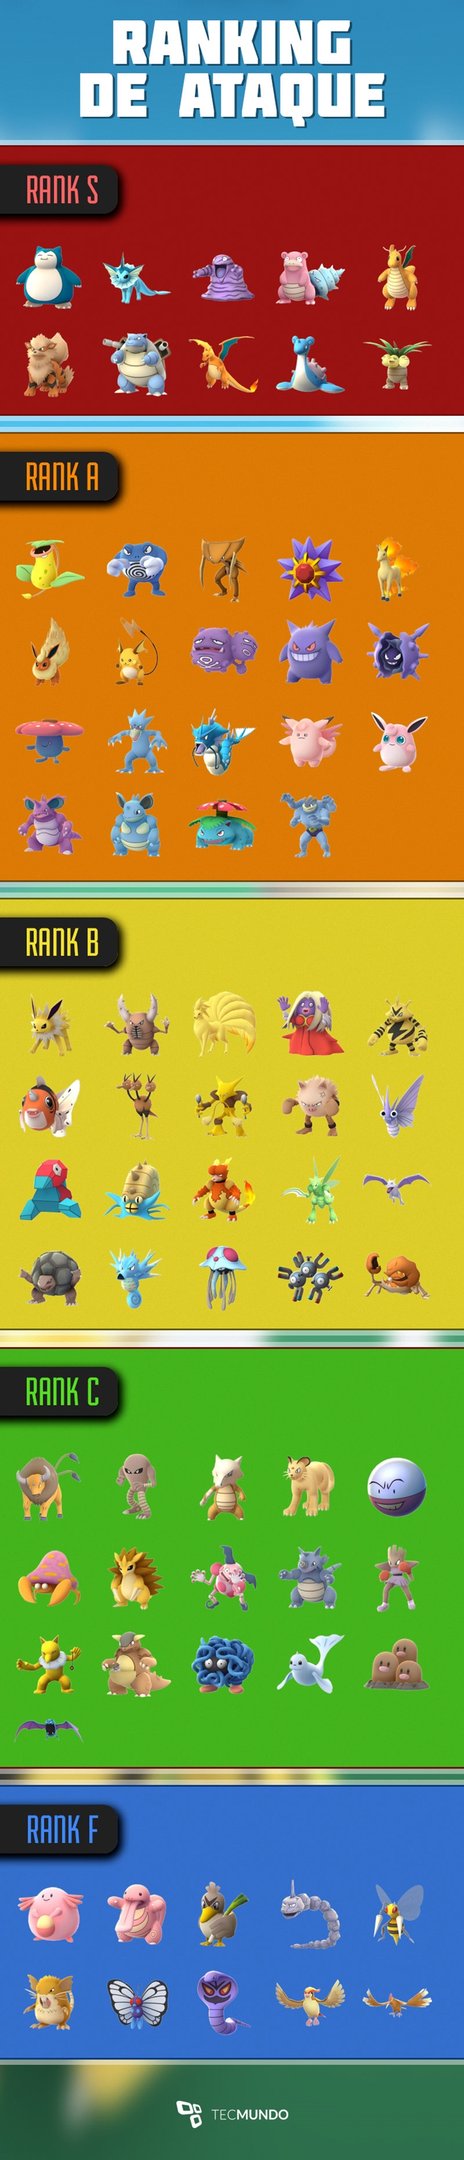 Aqui está a lista dos melhores Pokémon e ataques de cada um! Para Atacar  Ginásios!